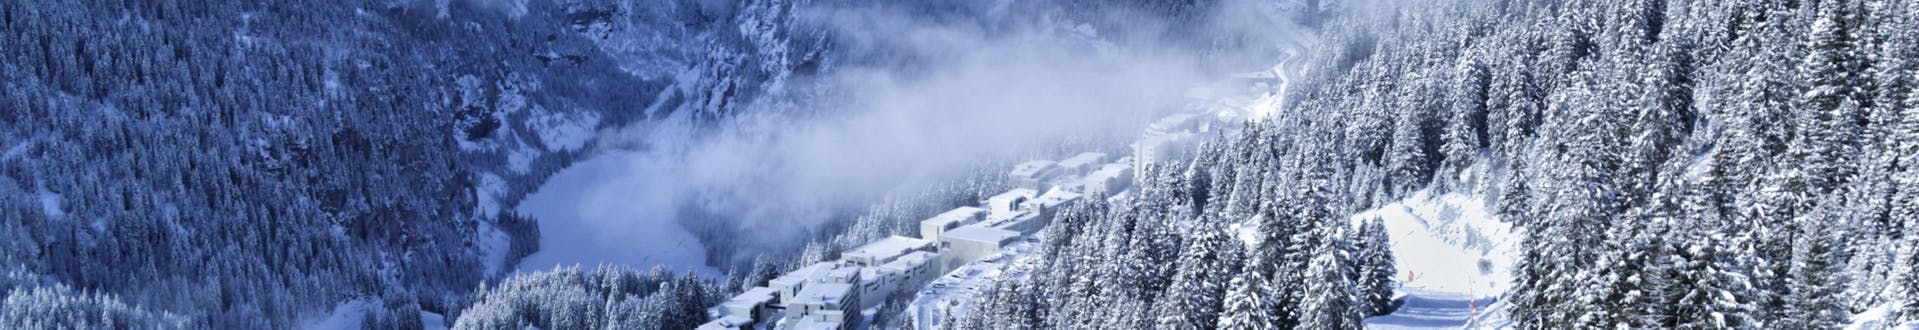 Une photo du paysage hivernal blanc observé dans la station de ski de Flaine où les écoles de ski locales emmènent leurs élèves pour leurs cours de ski.